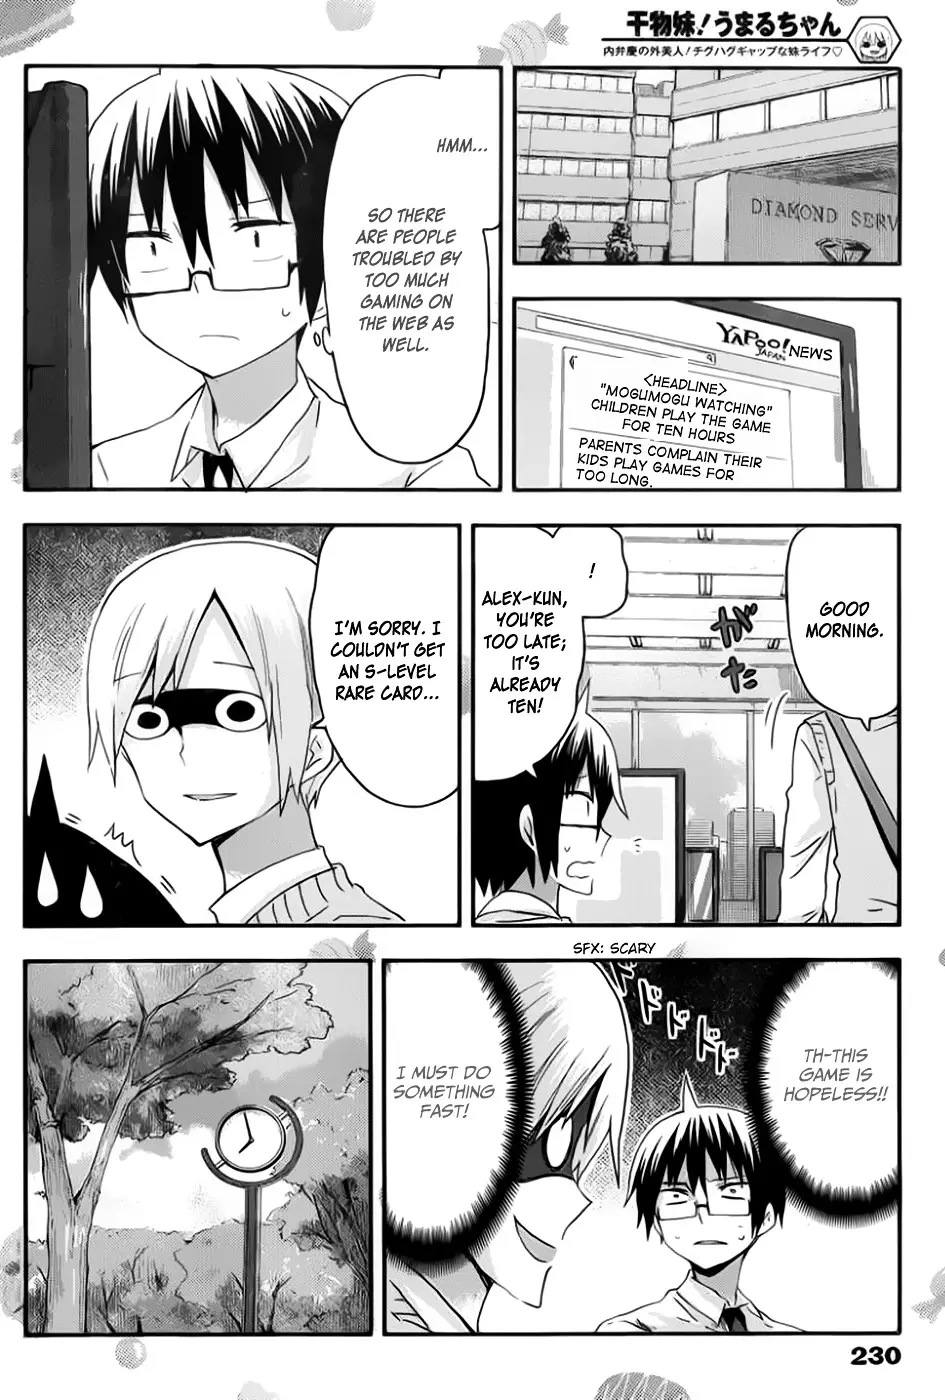 Himouto! Umaru-Chan - 72 page 4